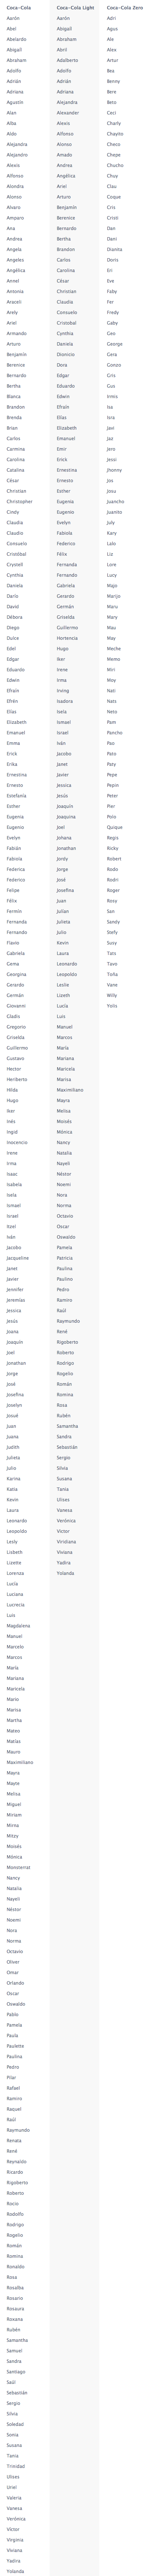 Estas es la lista con todos los nombres que aparecen en las latas de coca cola en México.